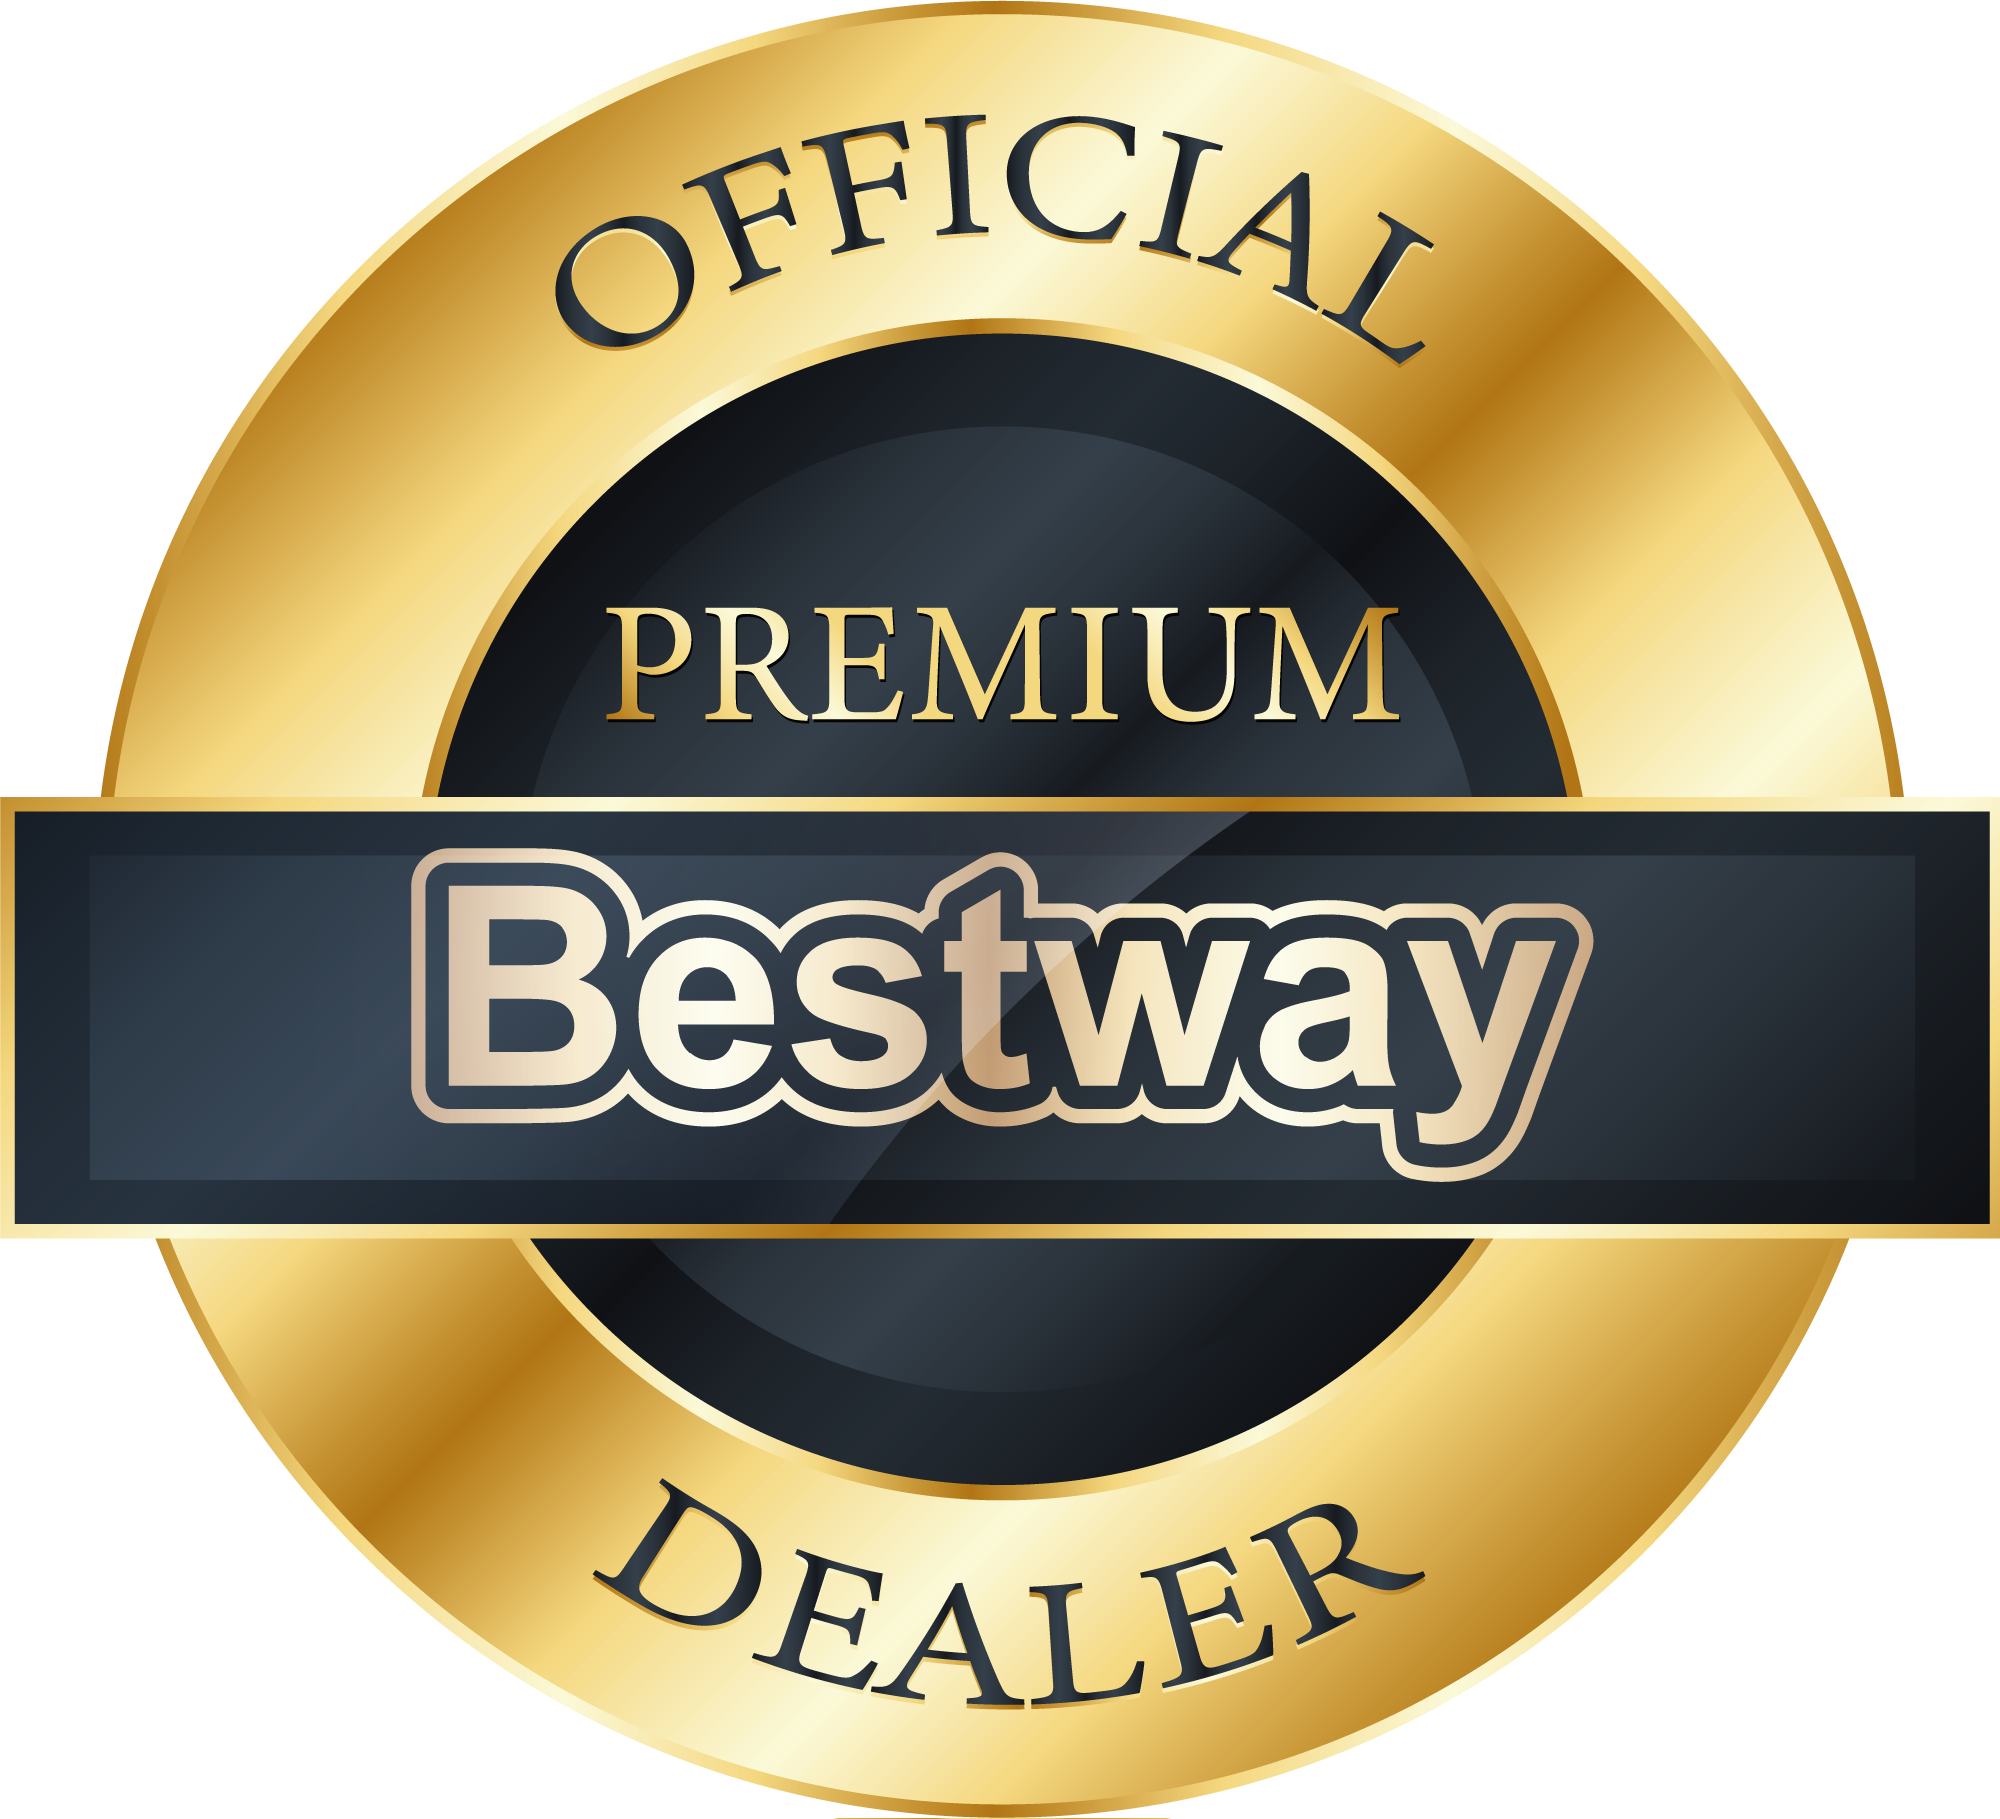 Bestway premium dealer